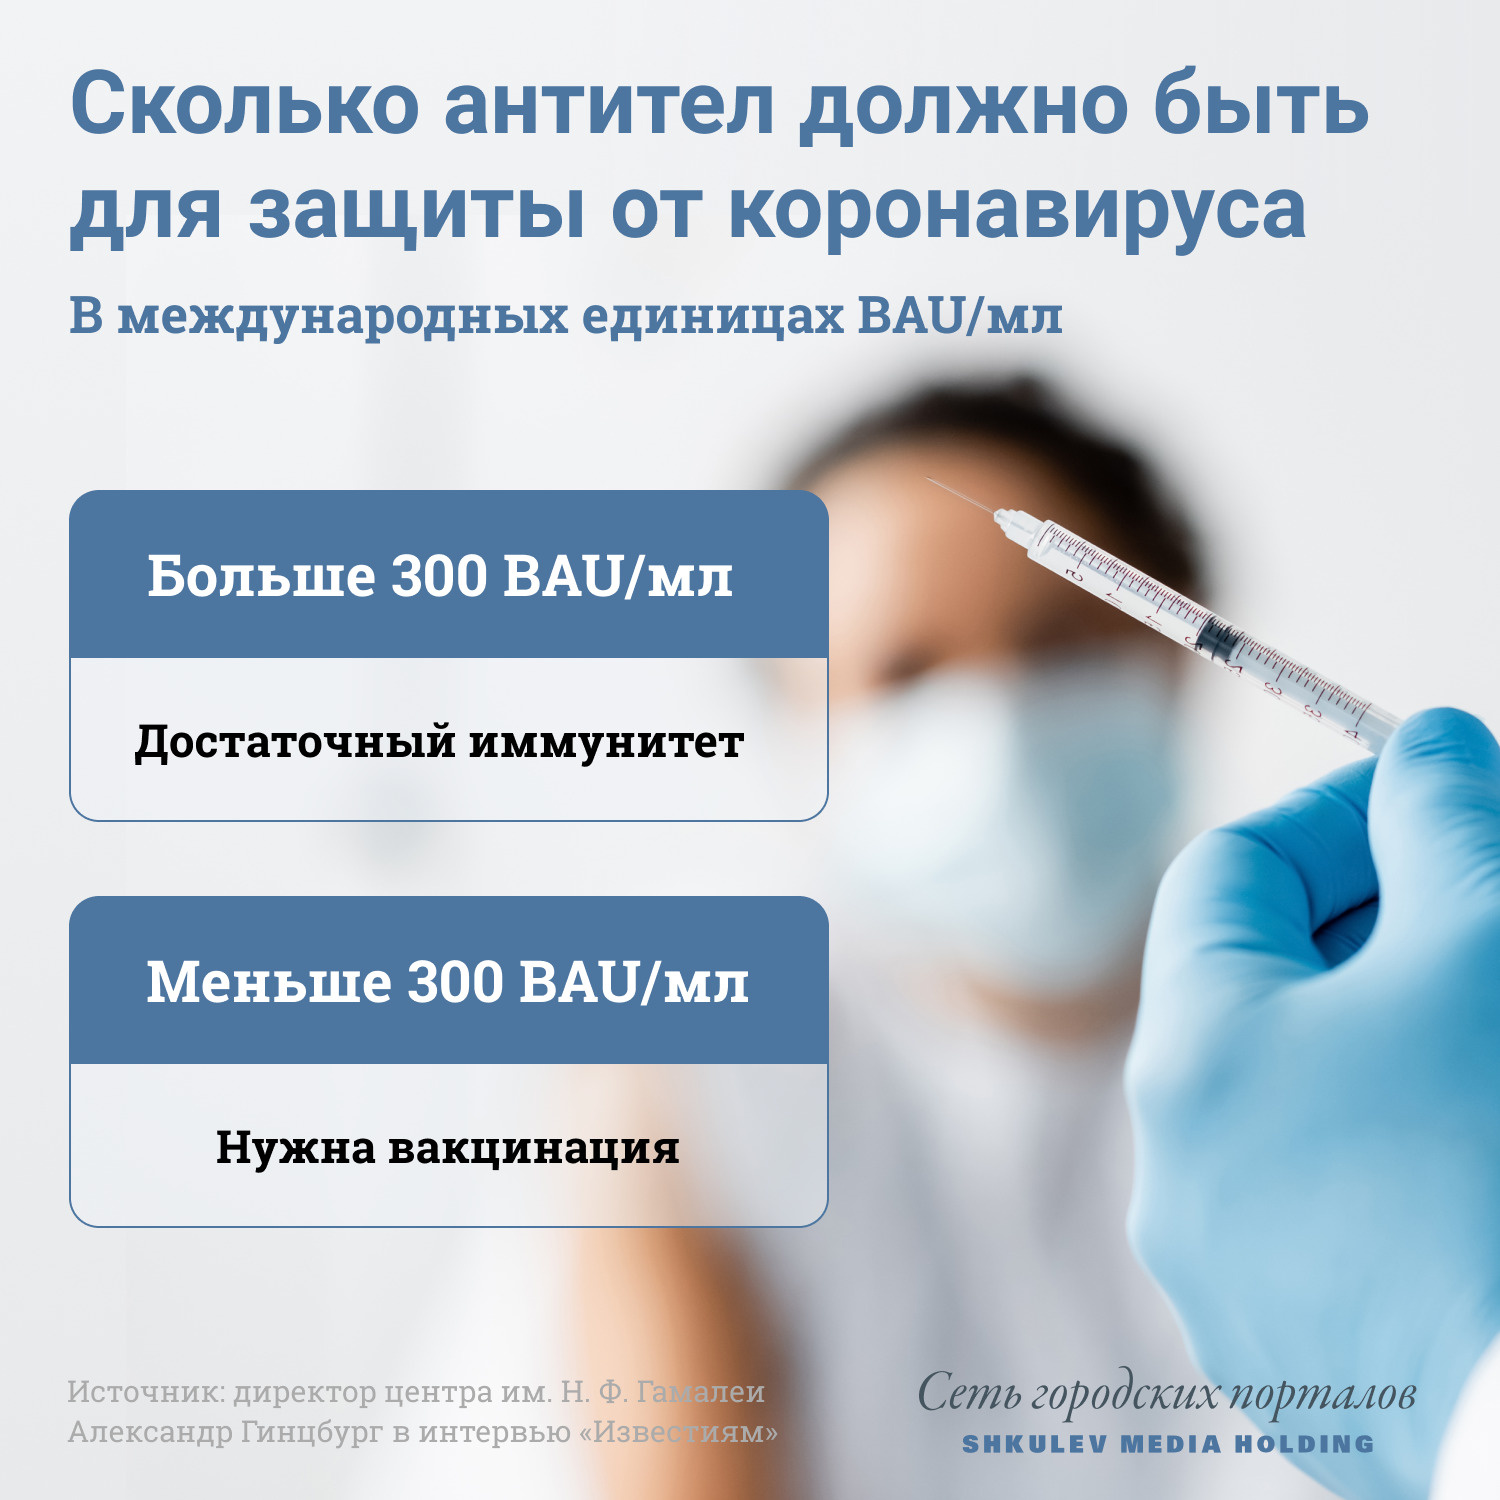 Необходимое для иммунитета количество антител: 300 BAU/мл